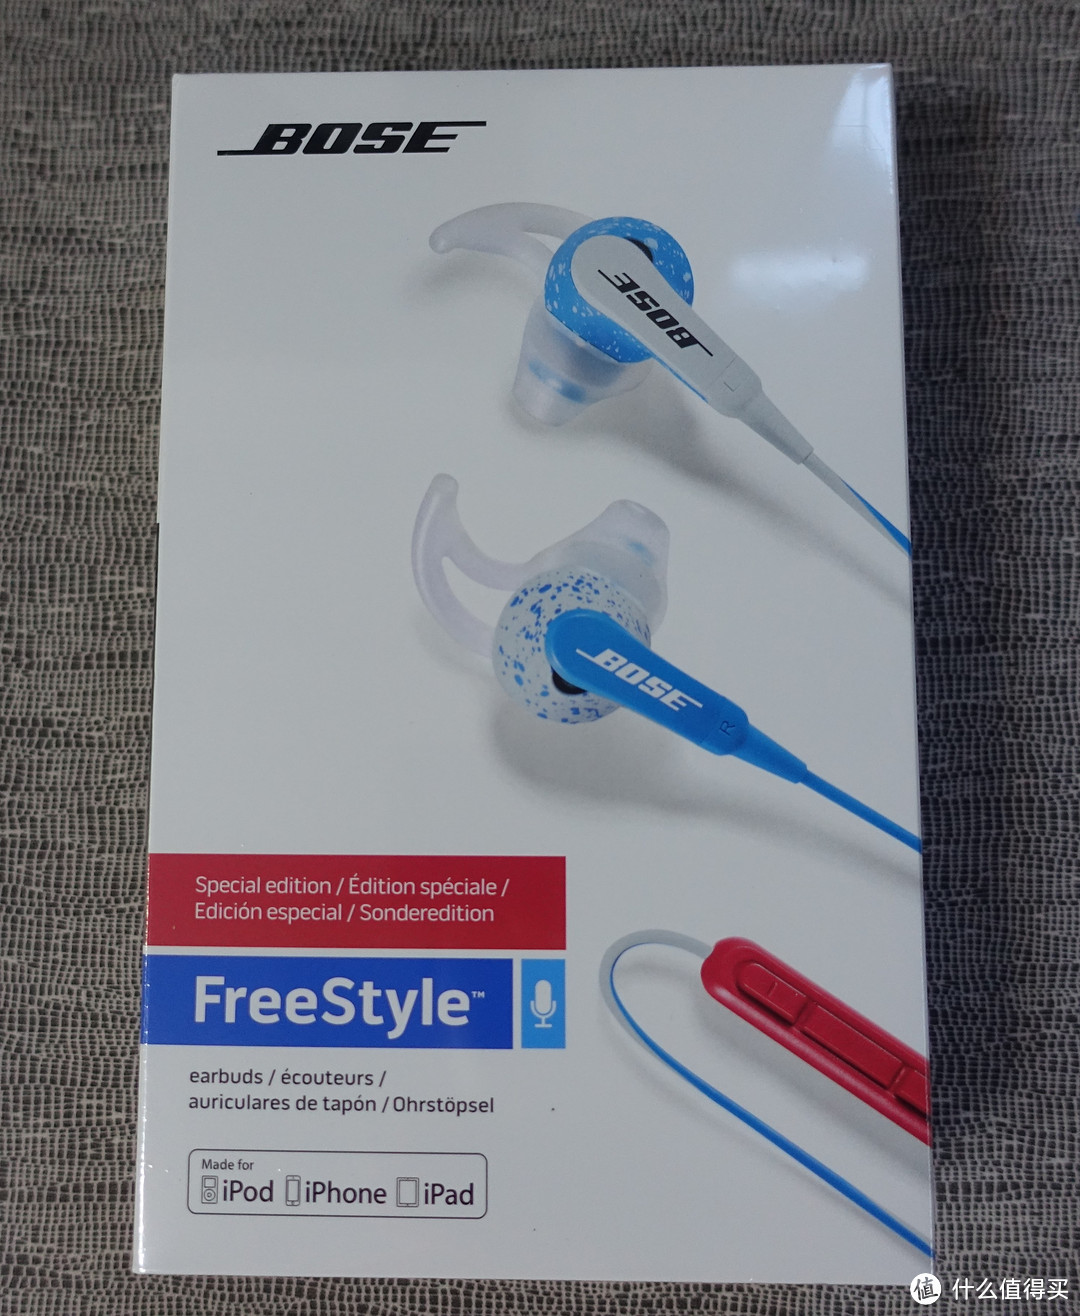 在恰好的时间遇到恰好的你：Bose FreeStyle 彩色音乐通话线控耳麦iOS版 使用小记